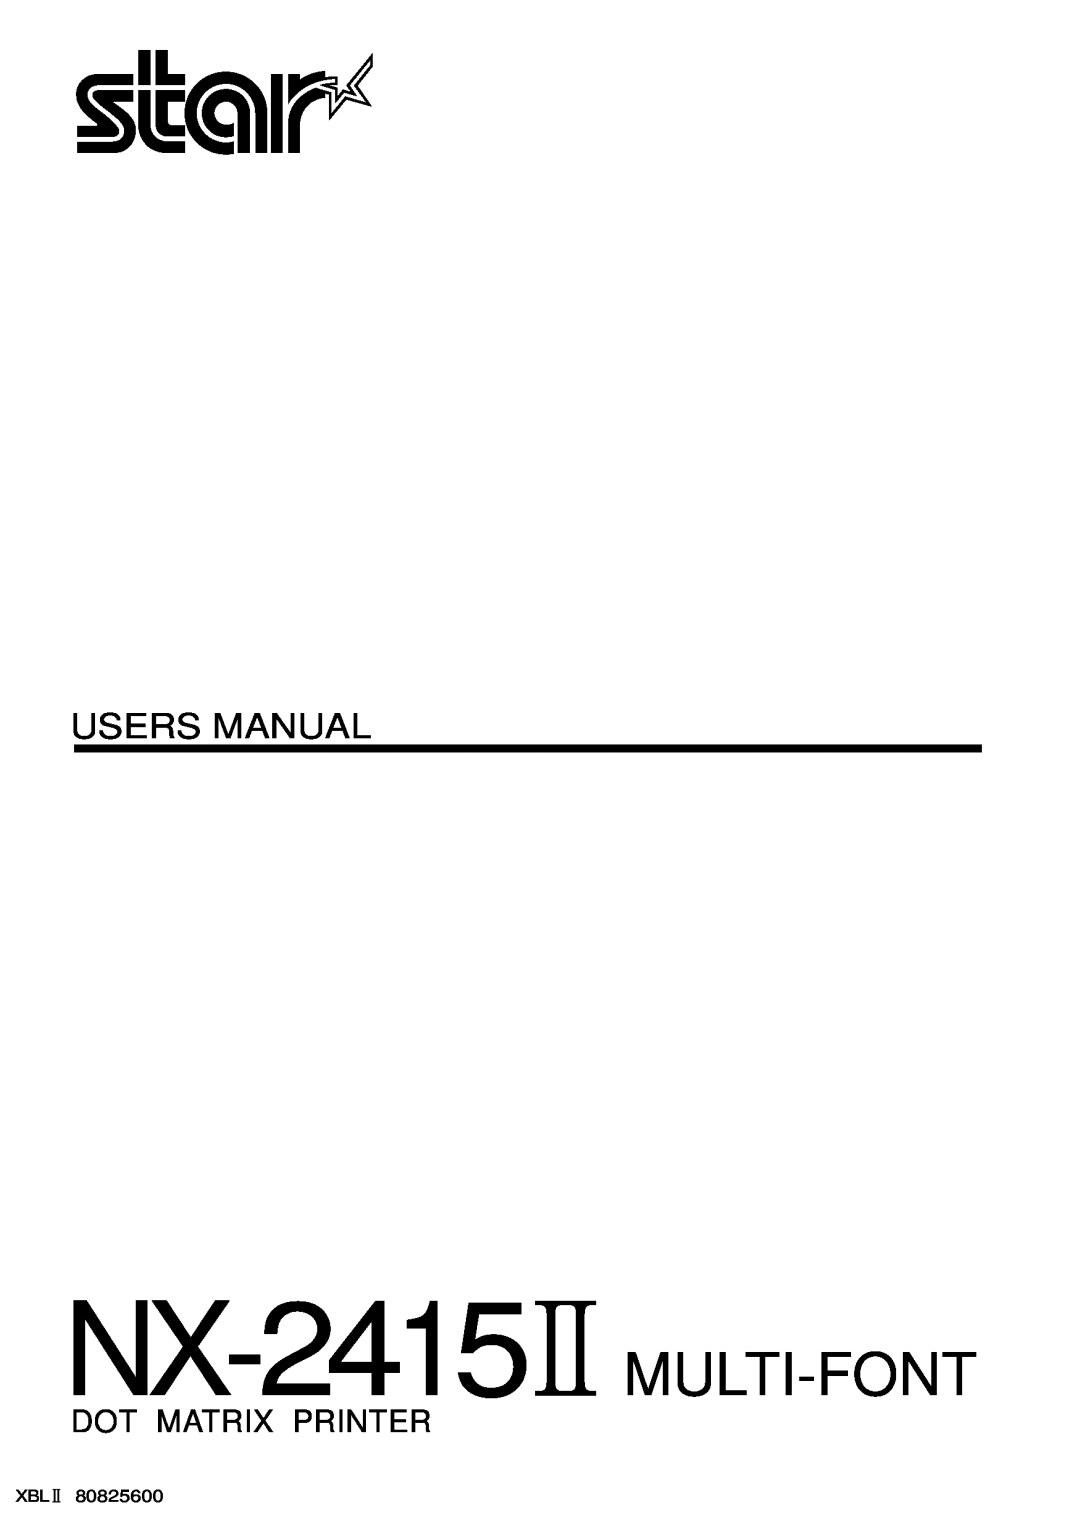 Star Micronics NX-2415II user manual Dot Matrix Printer, NX-2415 MULTI-FONT, Users Manual 